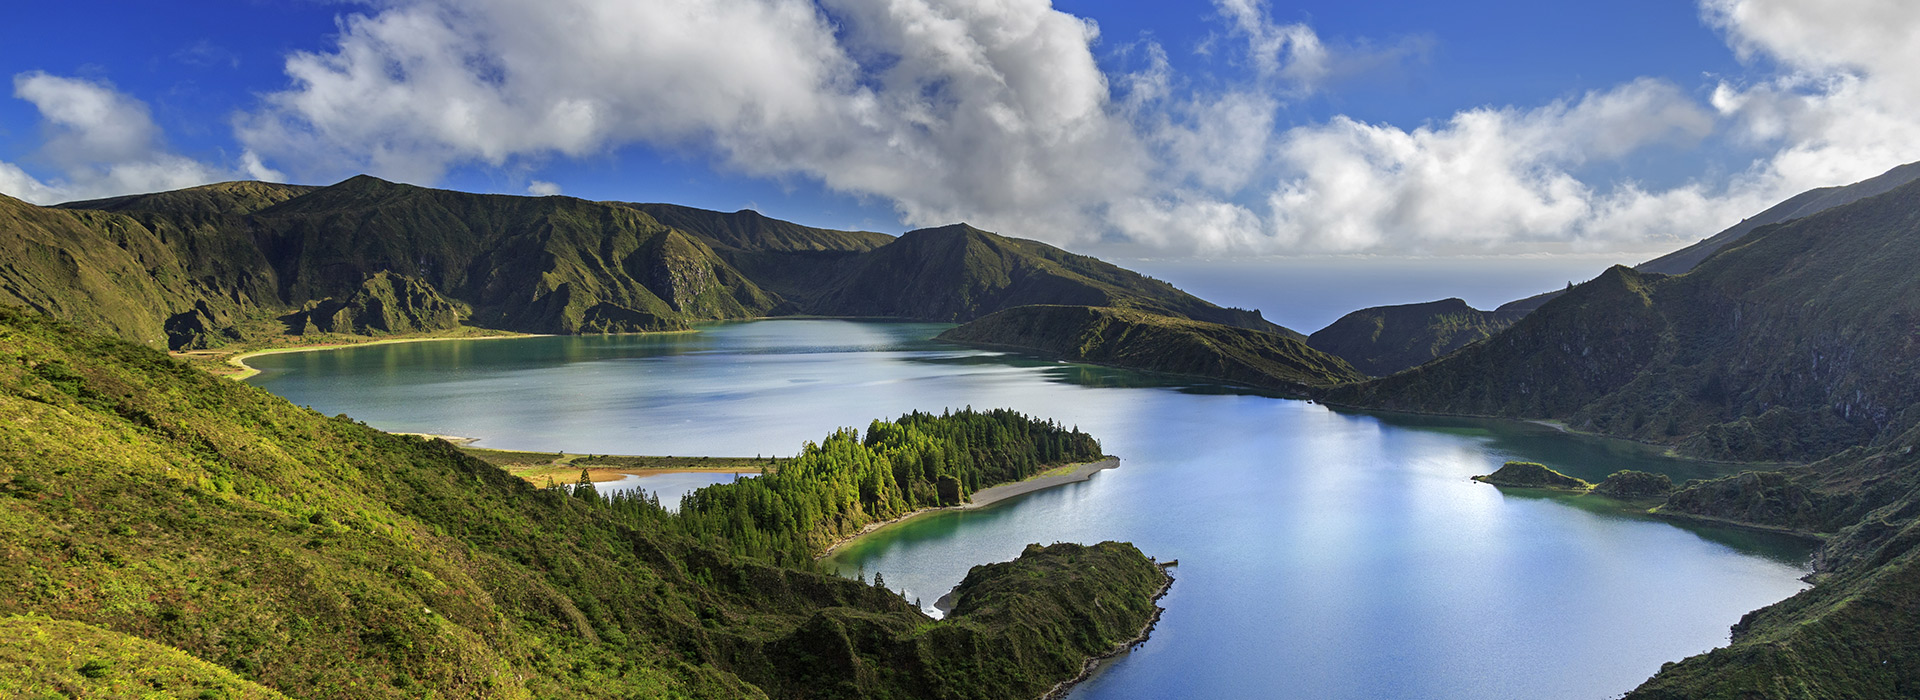 Escale aux Açores. Lac de feu, São Miguel.